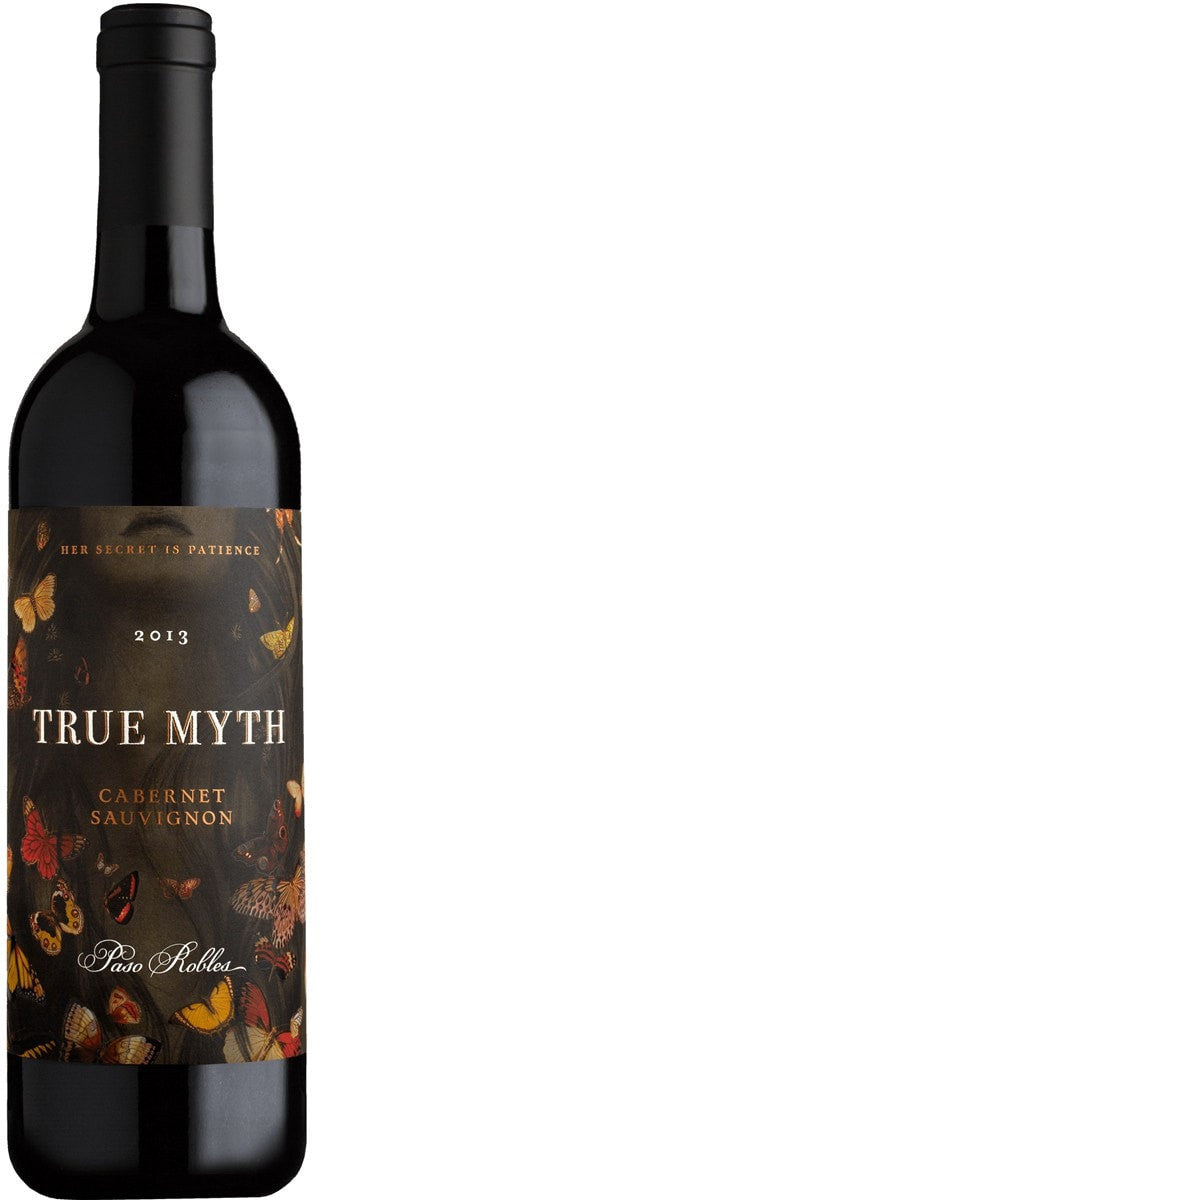 True Myth Cabernet Sauvignon 2014 Paso Robles 750ml - true myth cabernet sauvignon